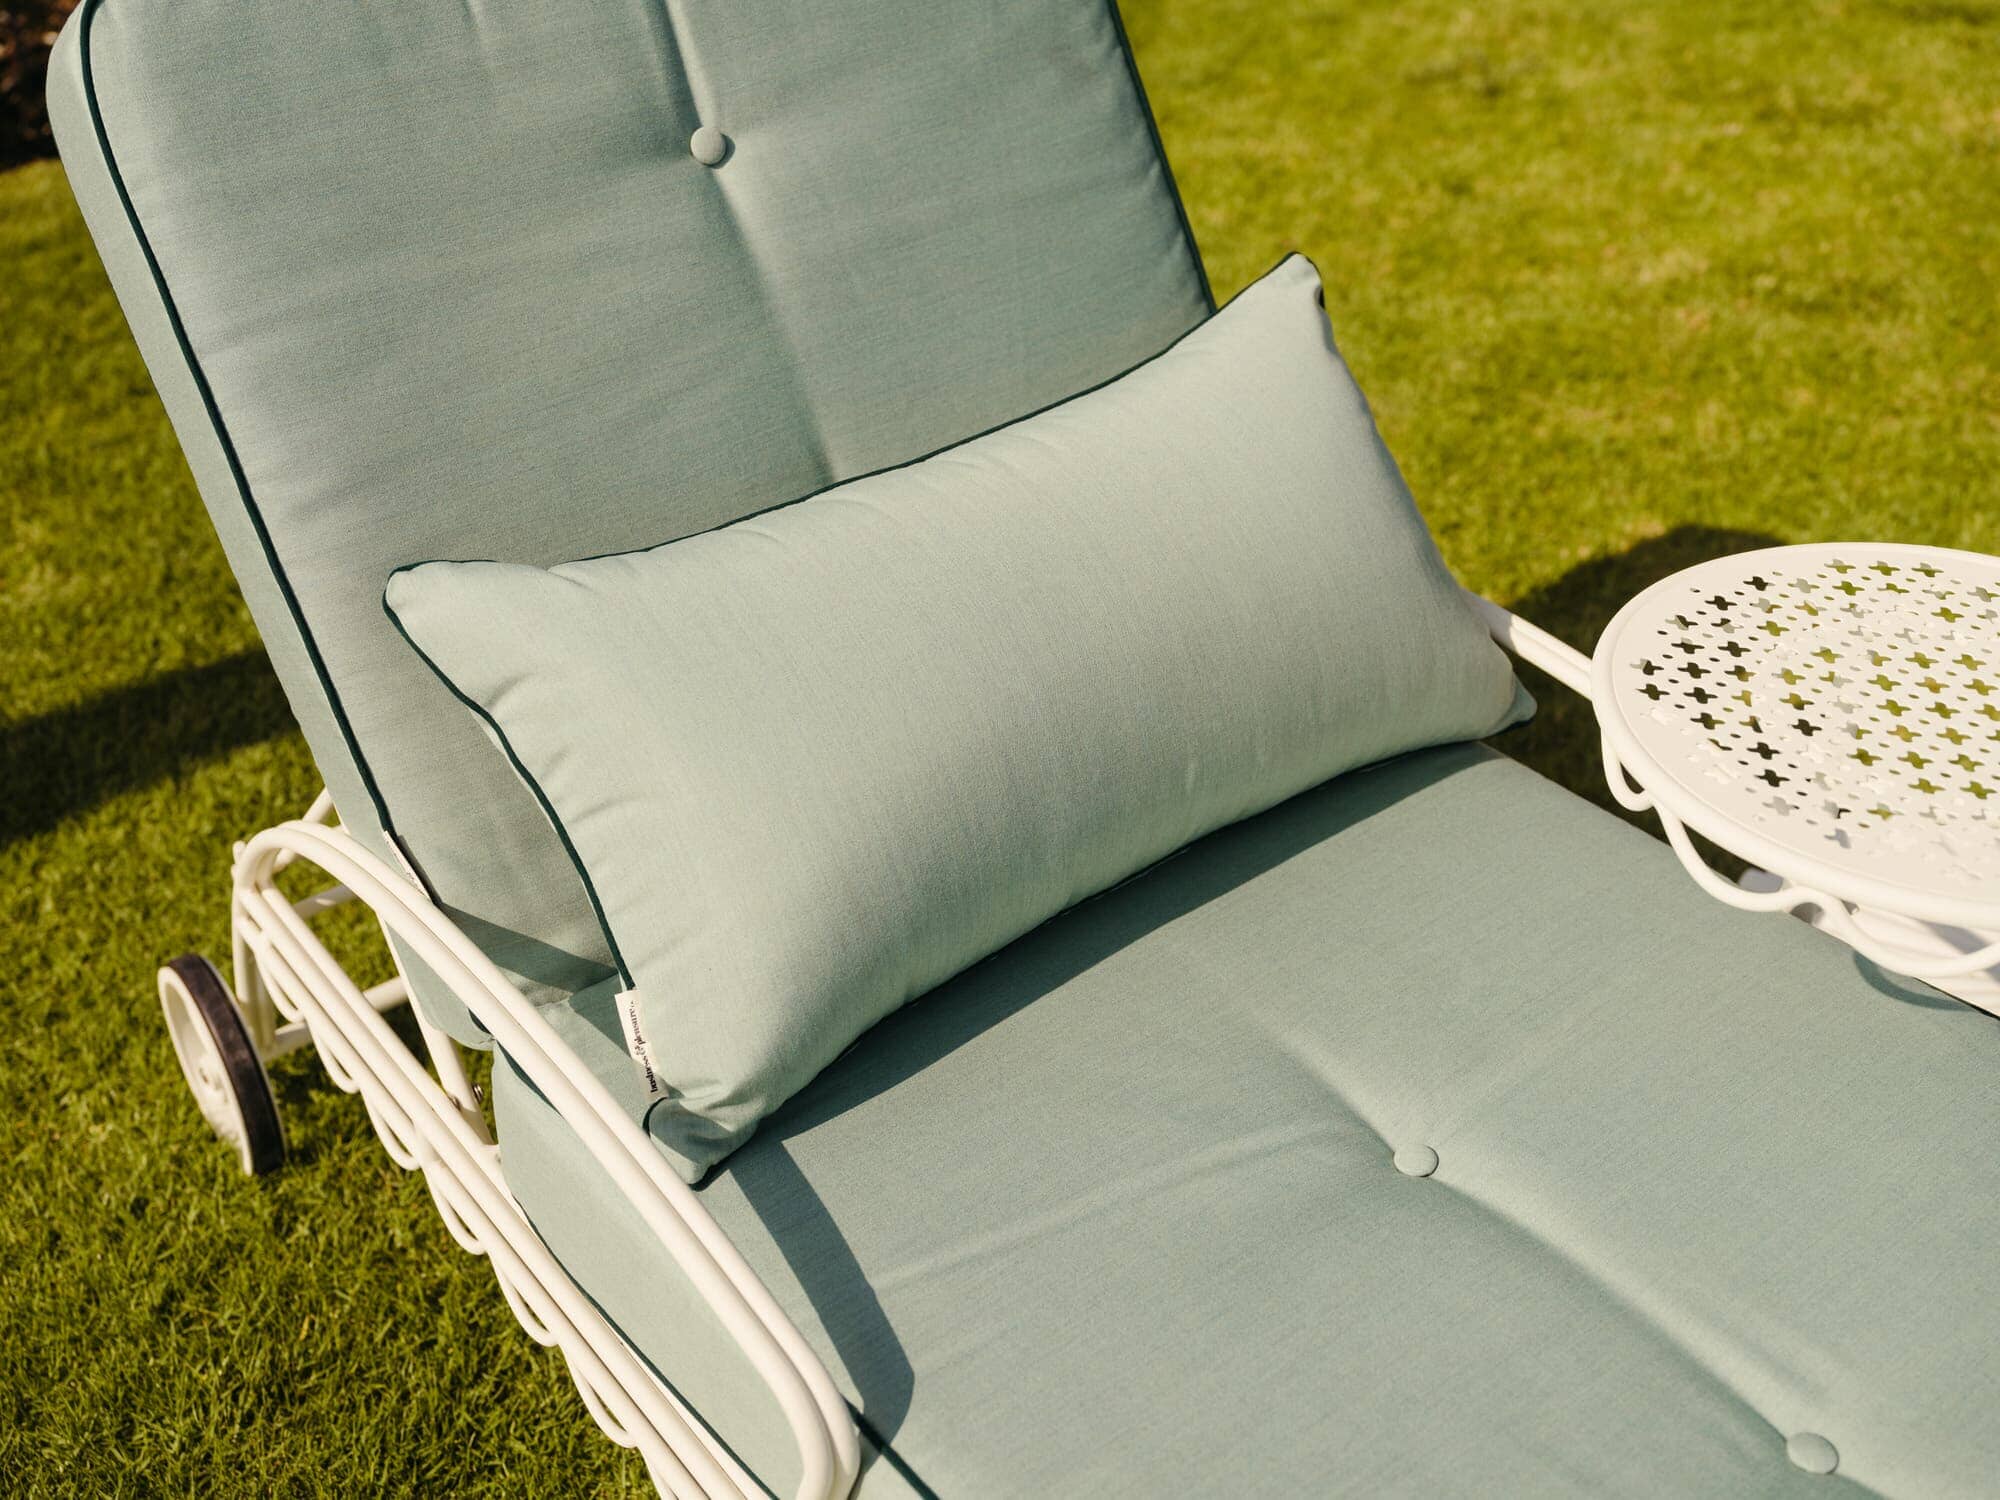 Throw pillow on reclining sun lounger in a garden setting